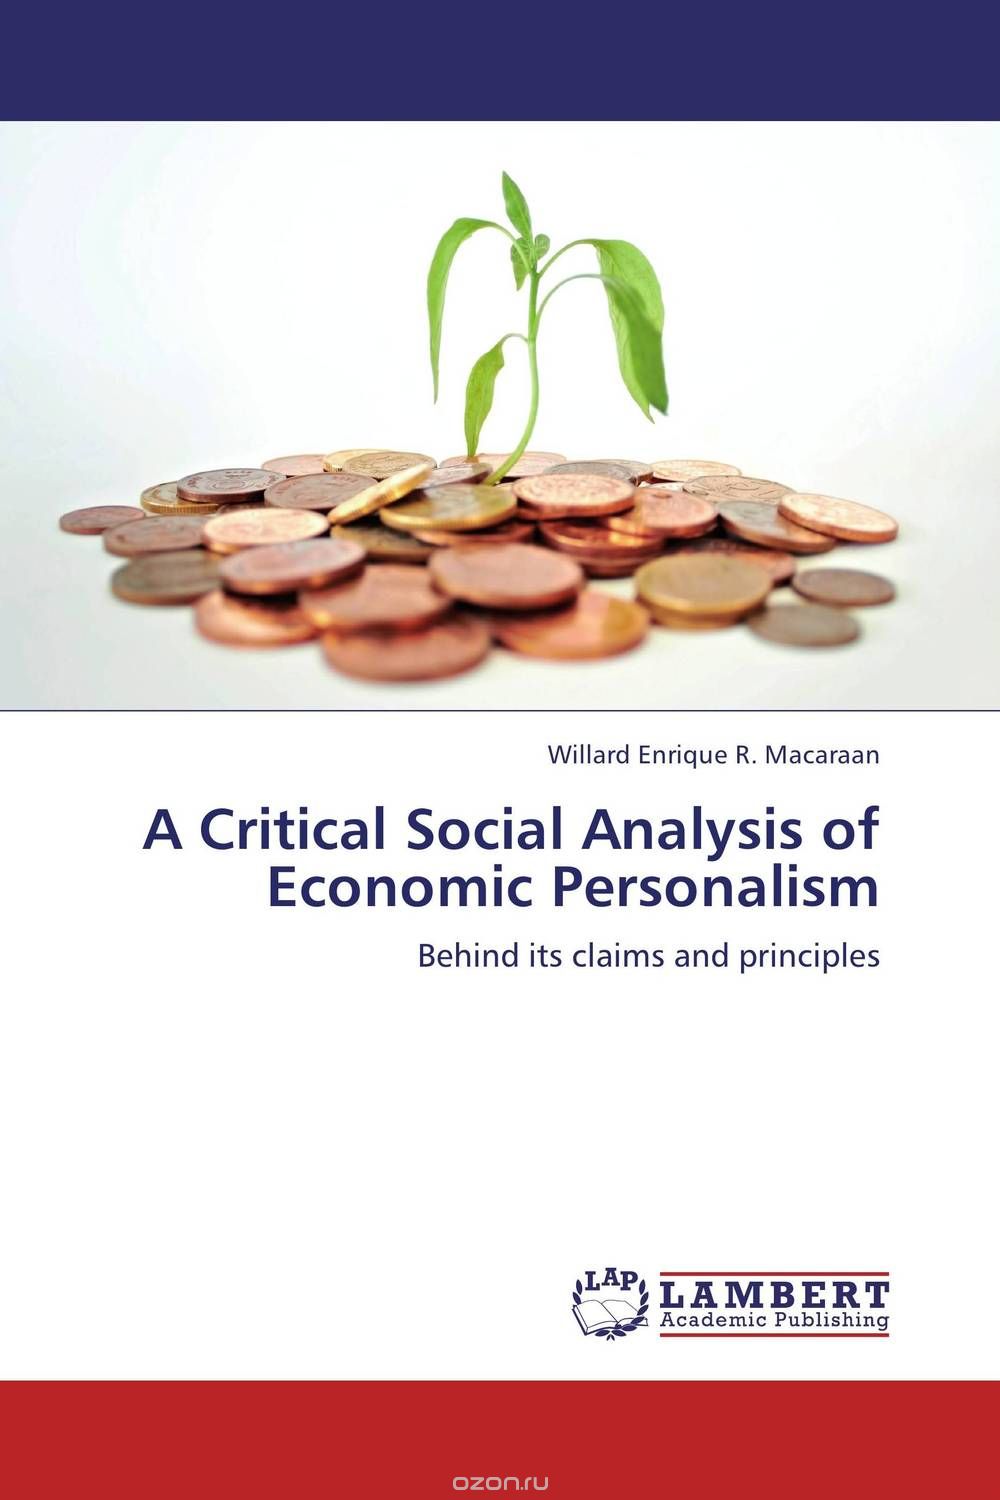 Скачать книгу "A Critical Social Analysis of Economic Personalism"